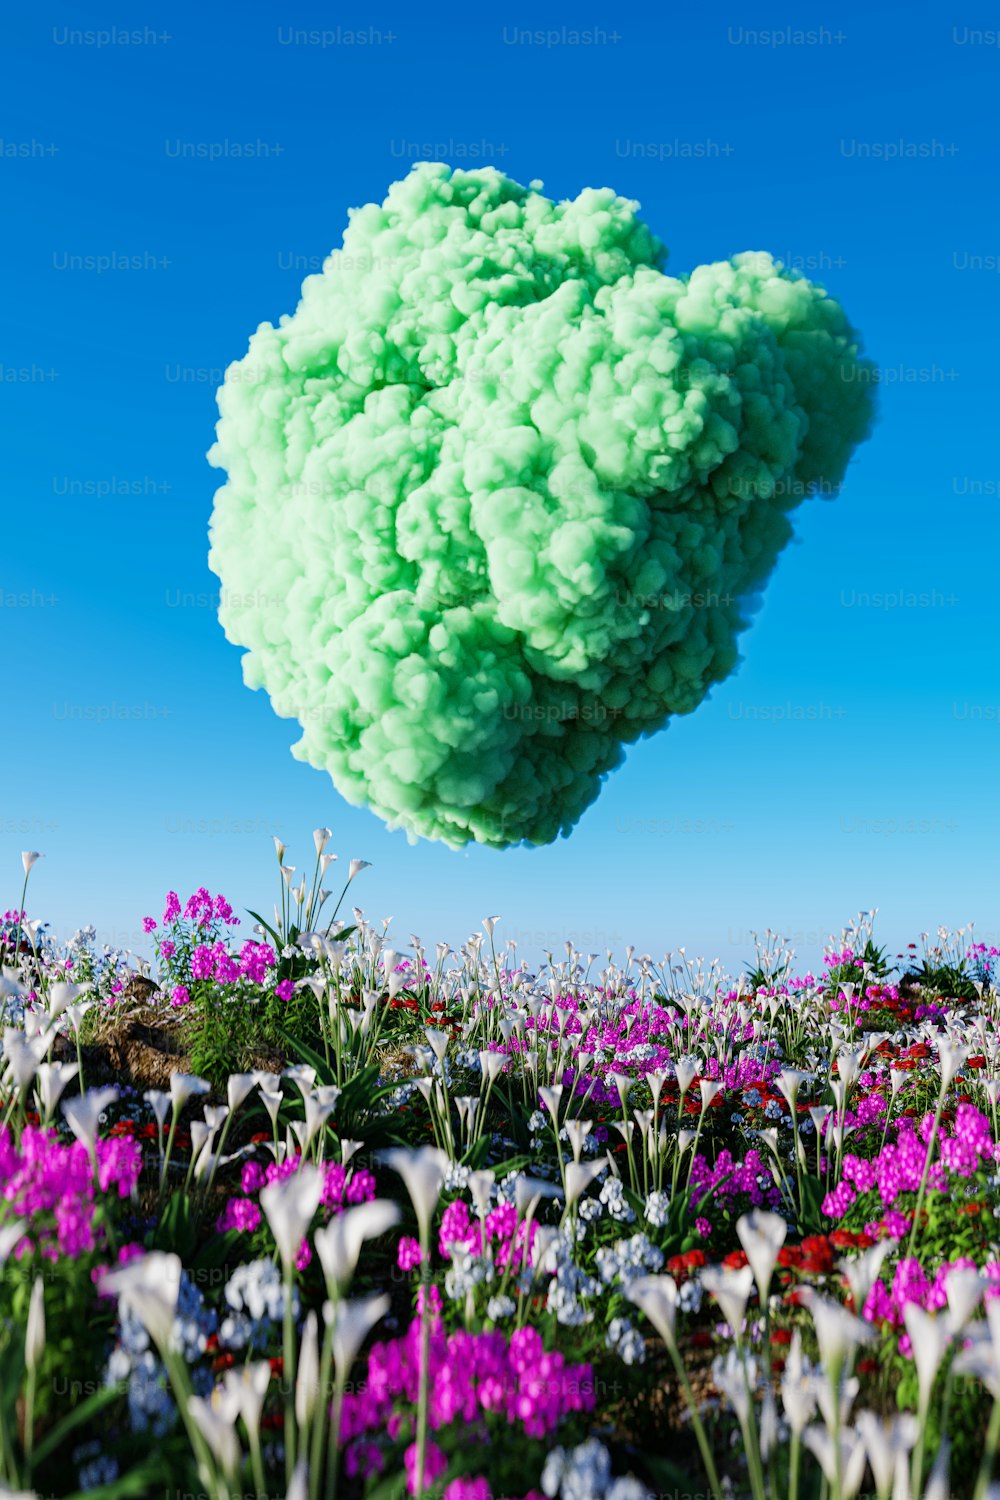 uma nuvem de flores verdes e roxas flutuando no ar